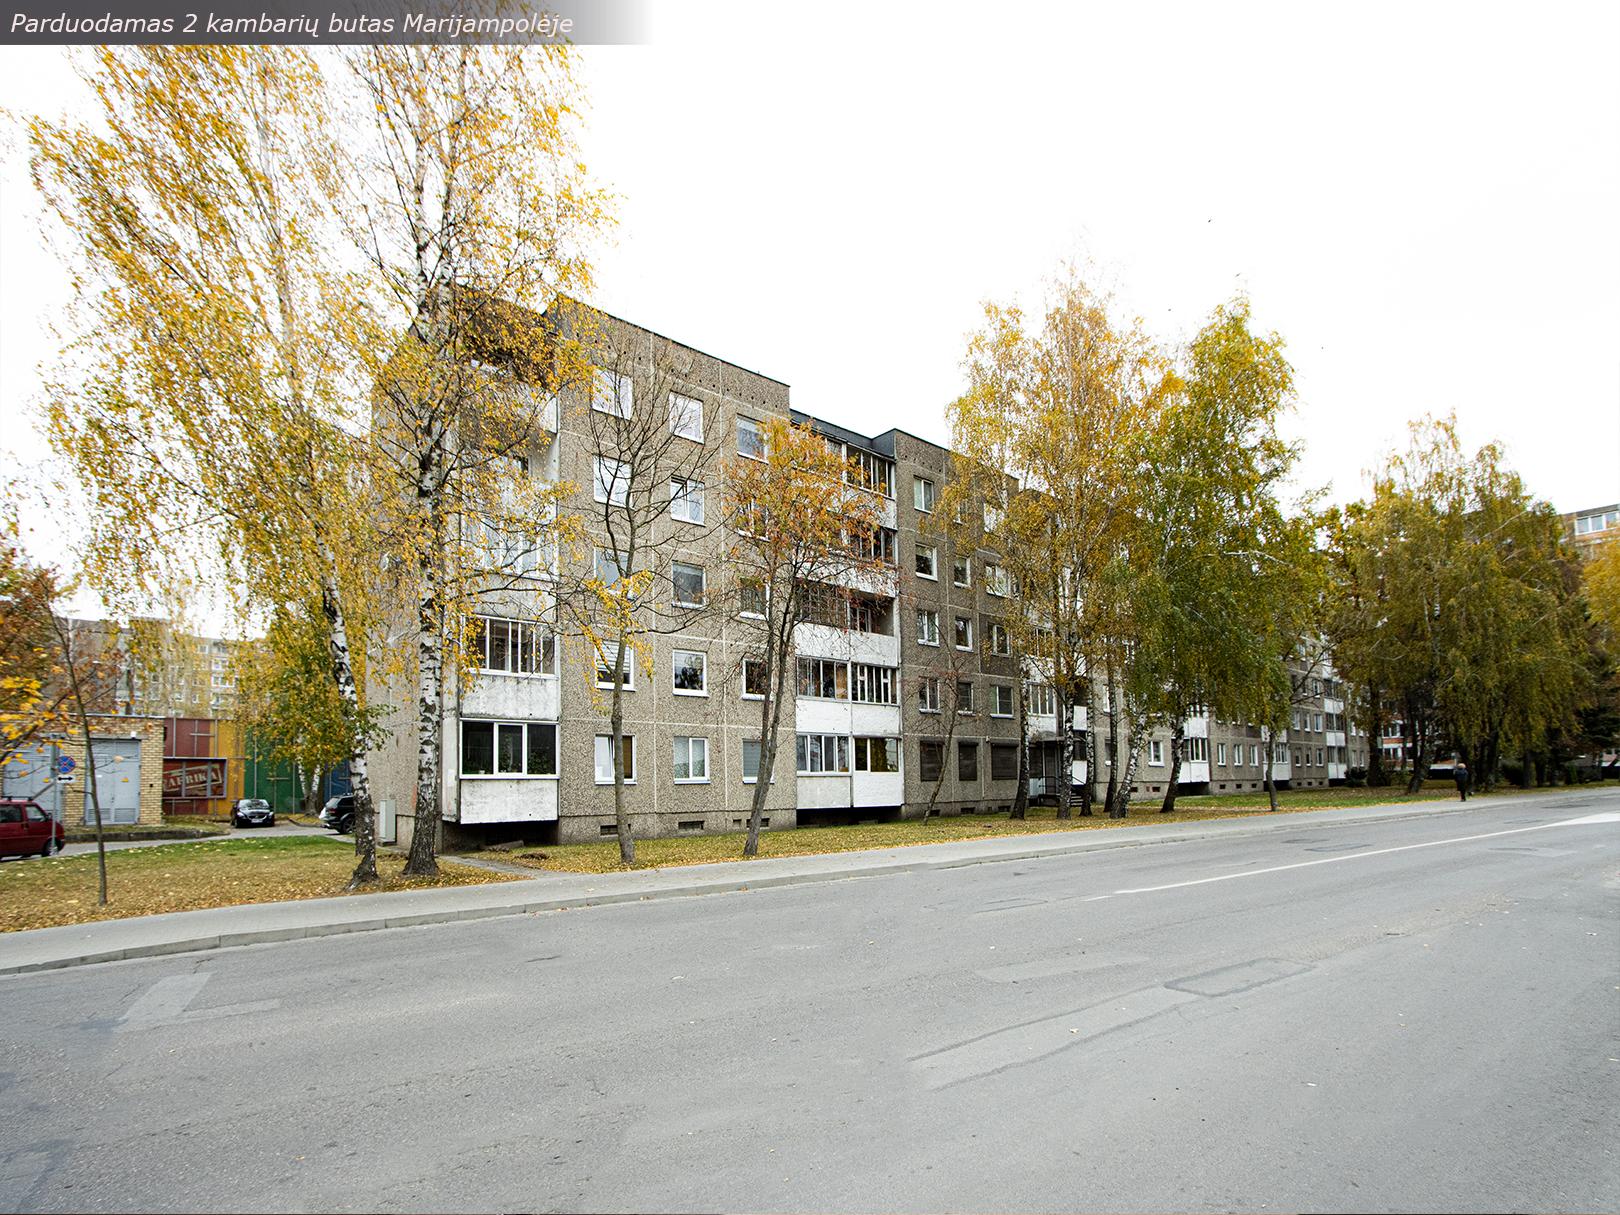 Parduodamas tvarkingas 2 kambarių butas R.Juknevičiaus g. 96., Marijampolėje.